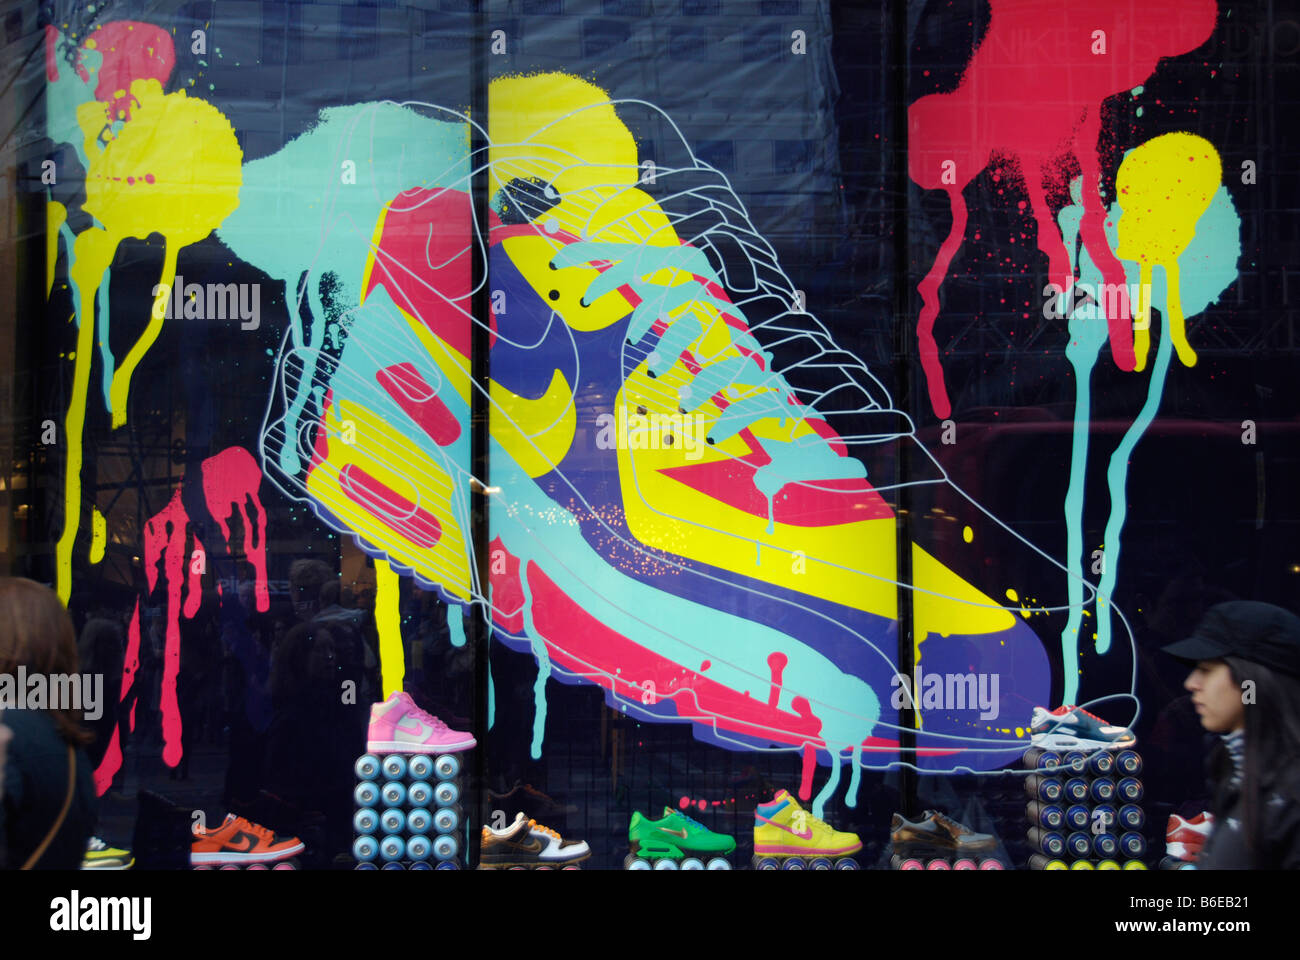 Nike shop immagini e fotografie stock ad alta risoluzione - Alamy